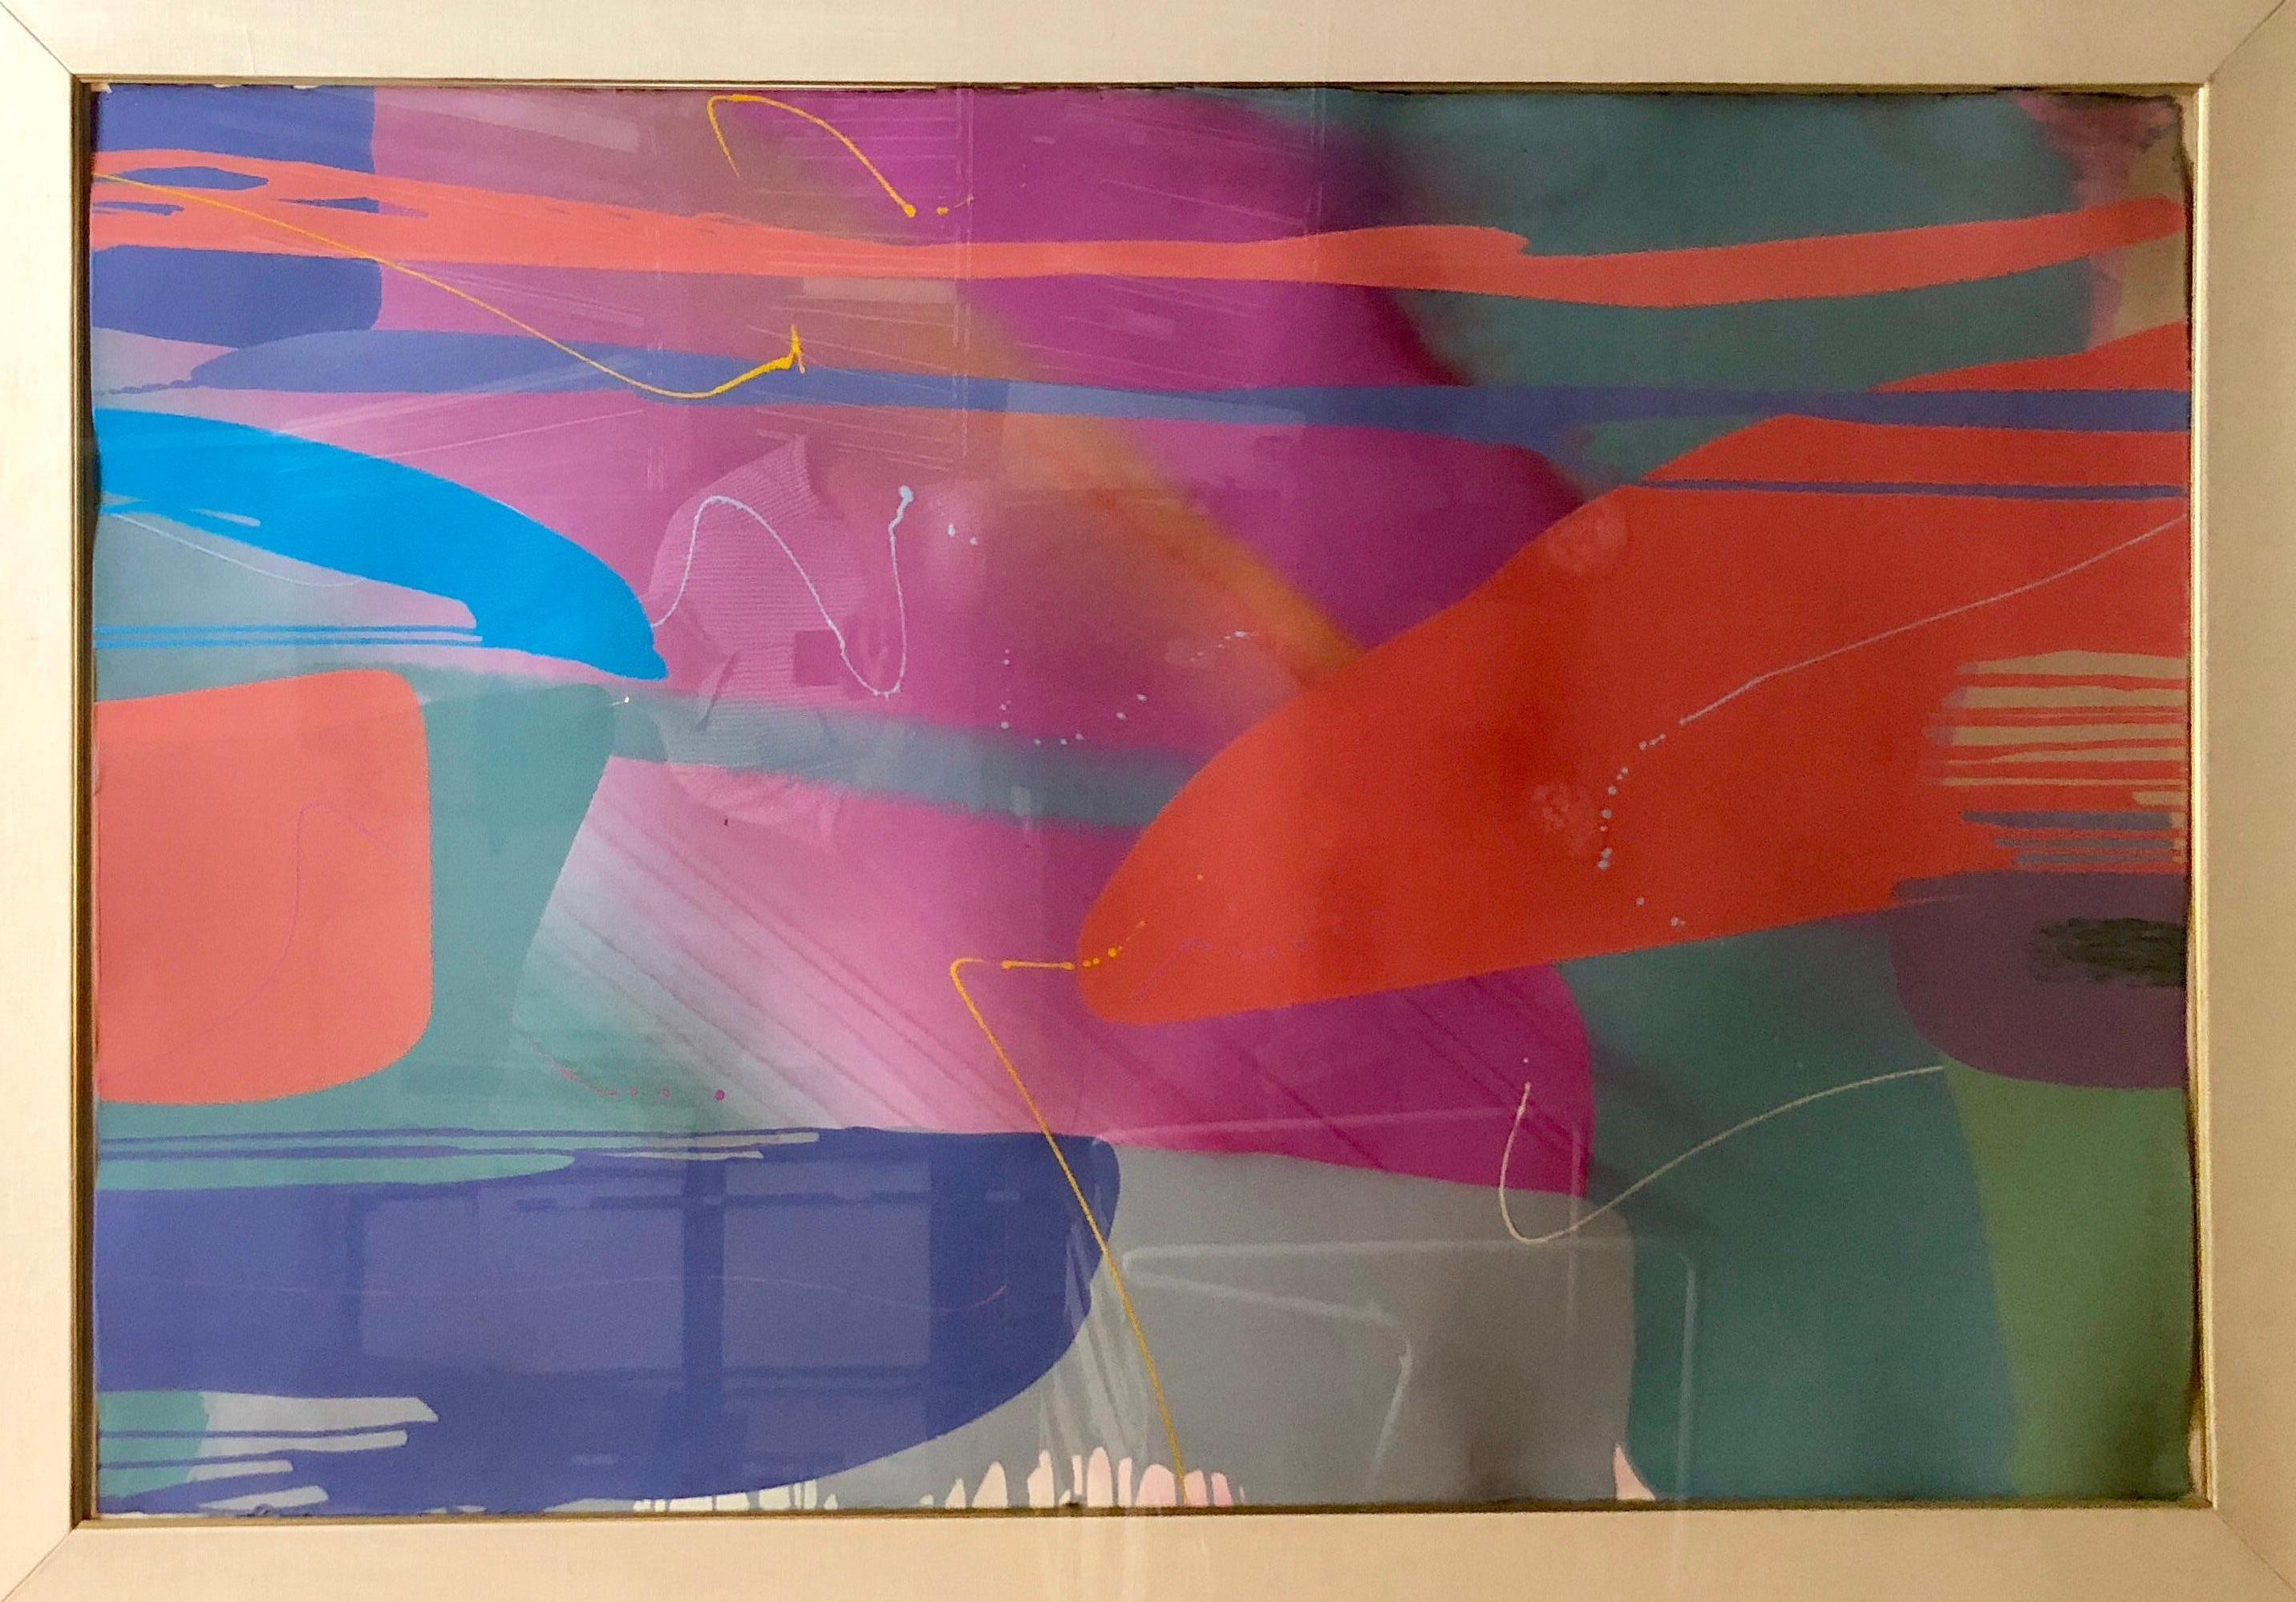 Monumentales texanisches Acrylgemälde der Moderne des abstrakten Expressionismus, Farbfeldmalerei (Abstrakter Expressionismus), Painting, von Lamar Briggs